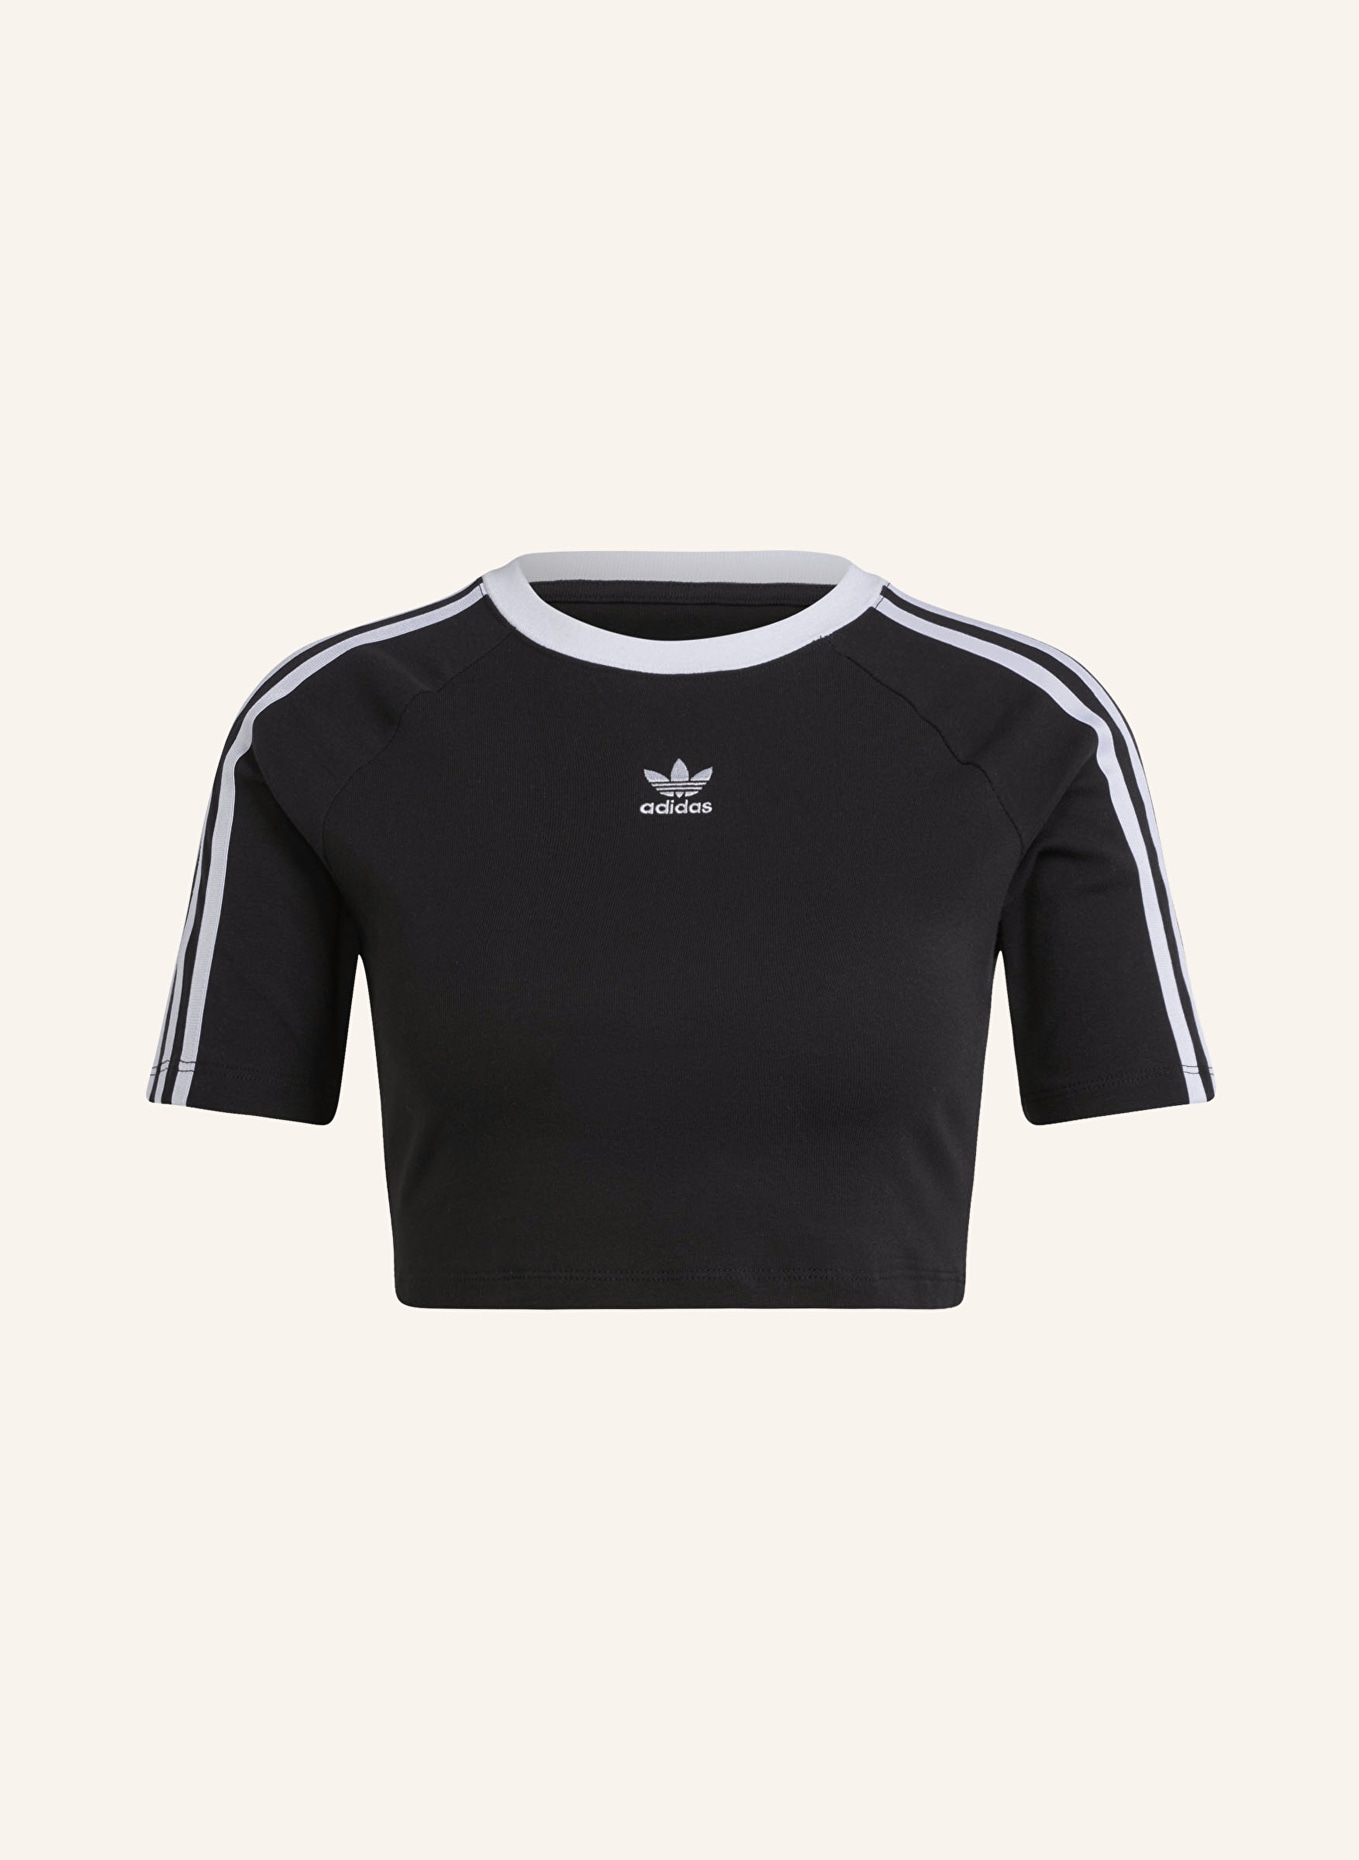 adidas Originals Cropped-Shirt, Farbe: SCHWARZ/ WEISS (Bild 1)